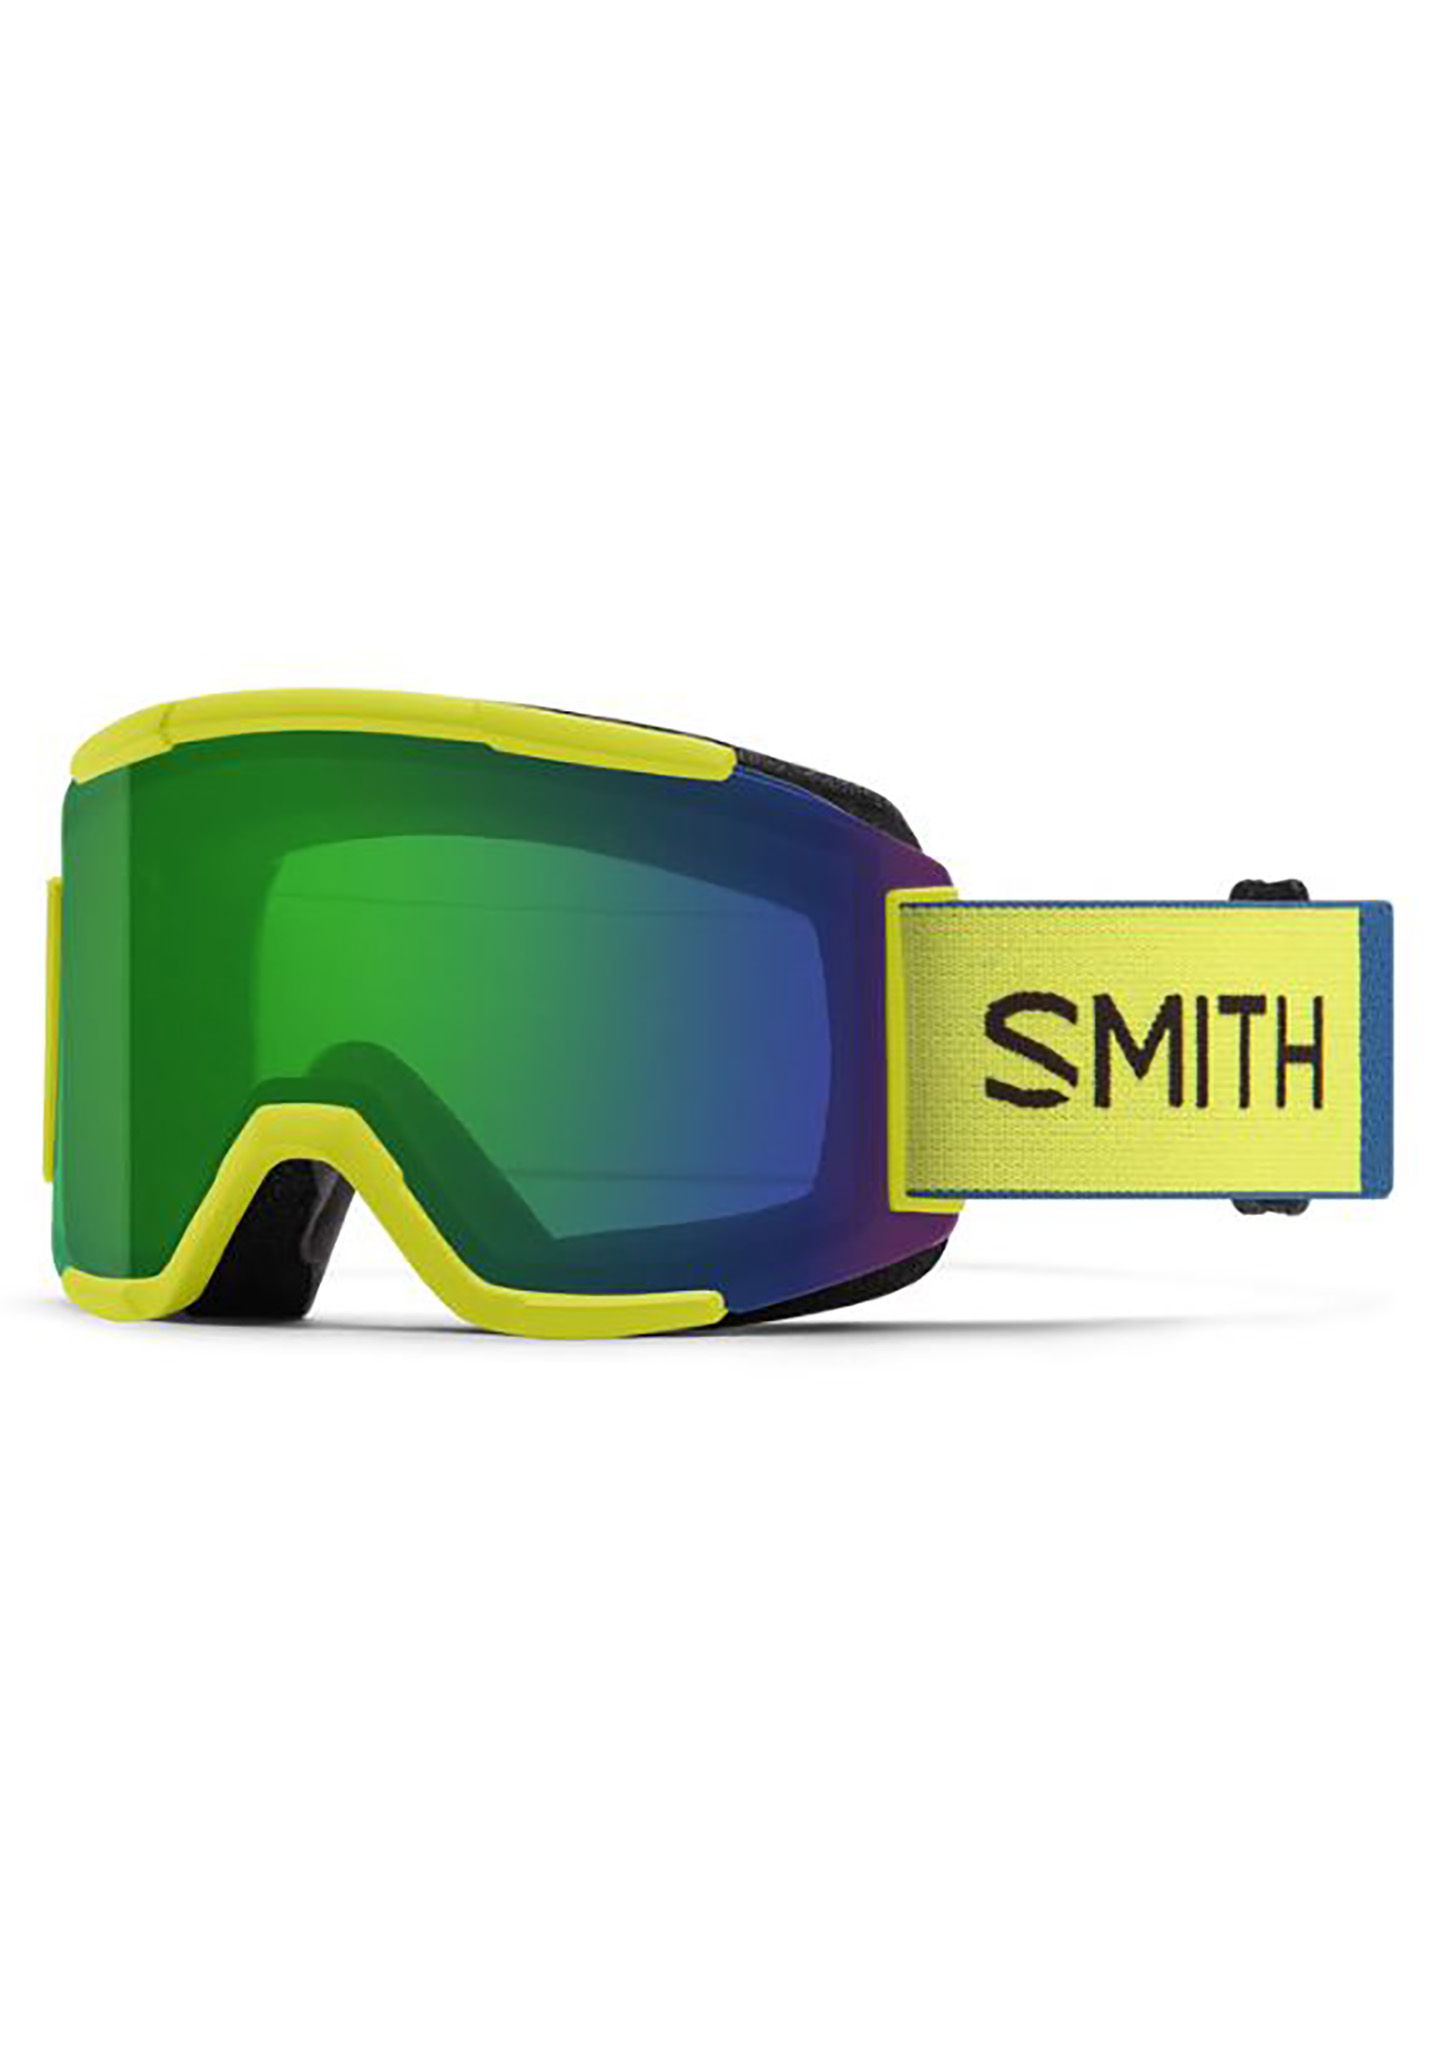 Smith Squad Snowboardbrillen neongelb/alltagsgrüner spiegel One Size